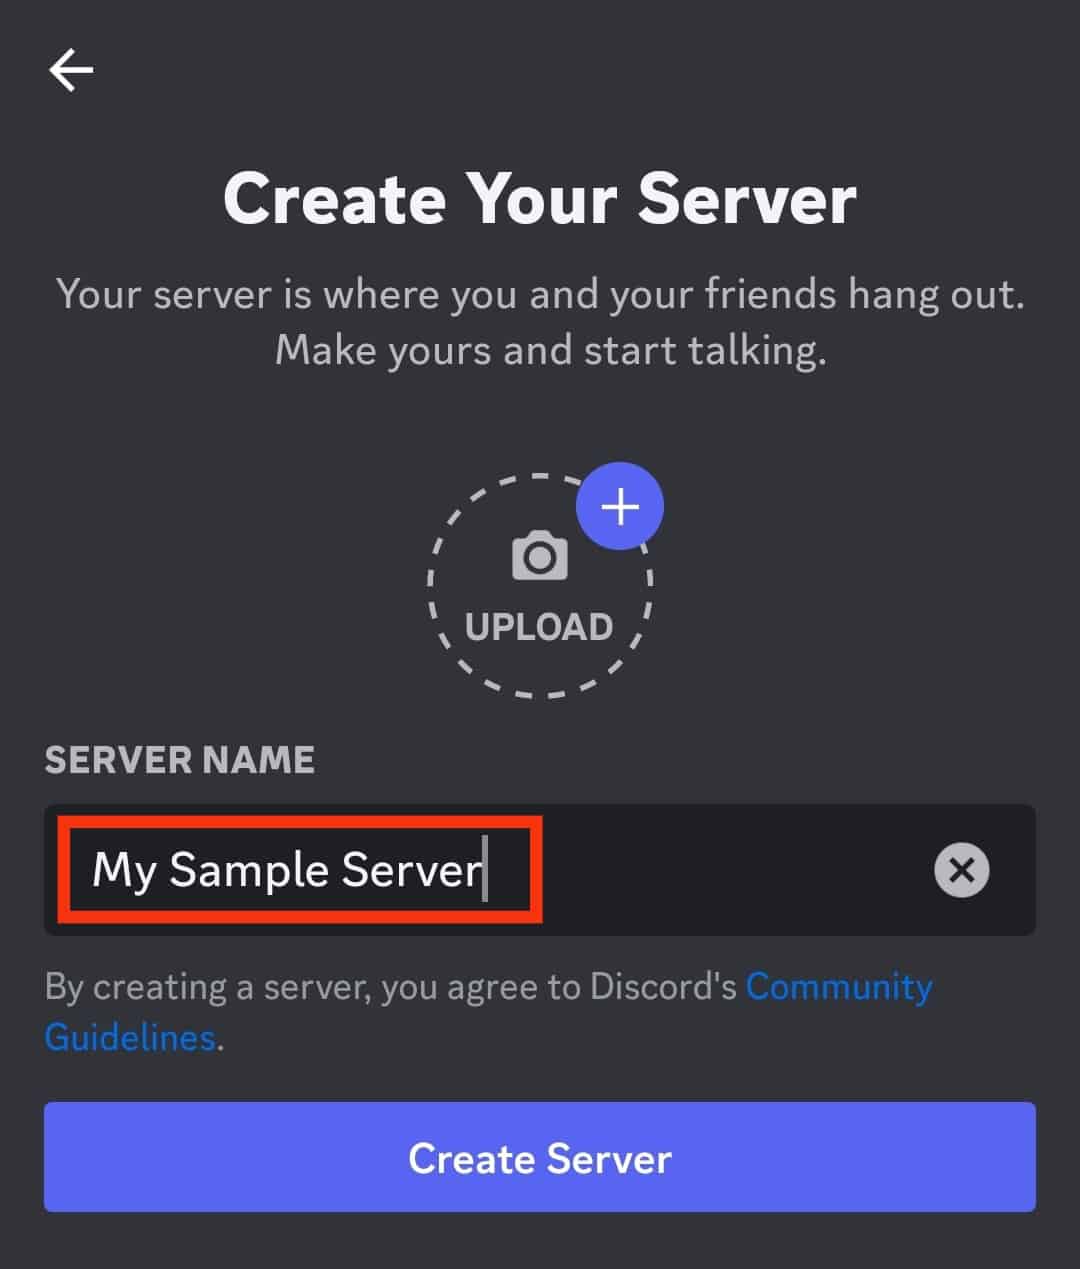 Enter The Server Name